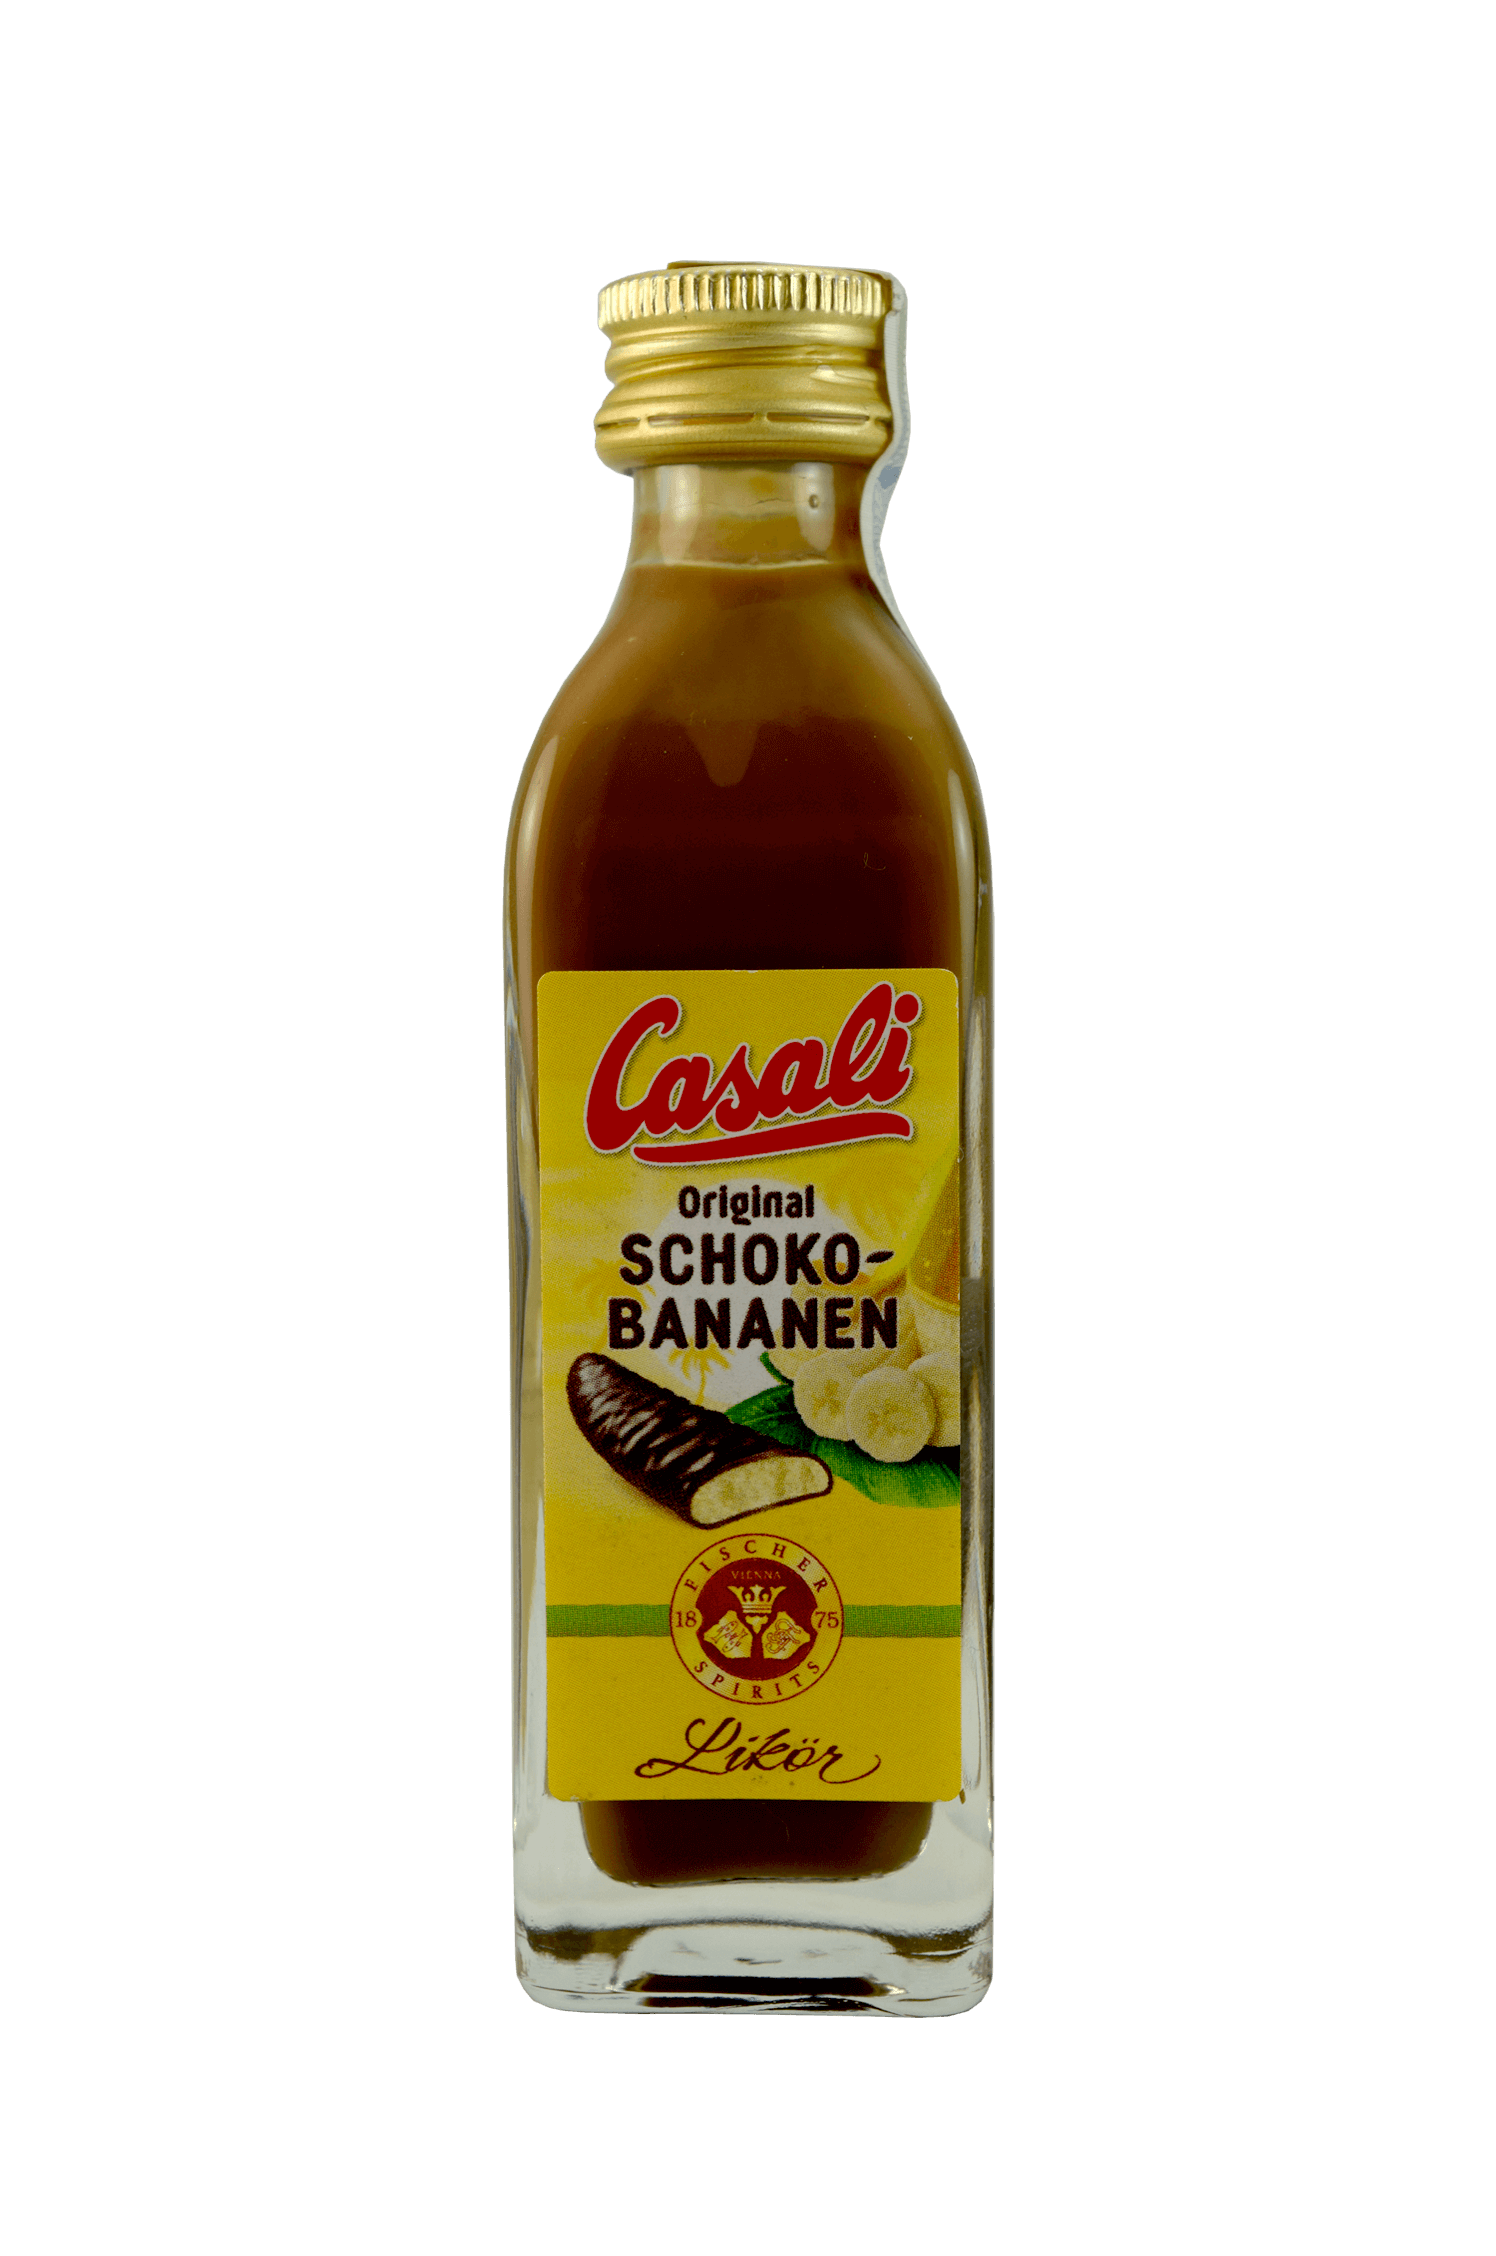 Casali Original Schoko – Bananen